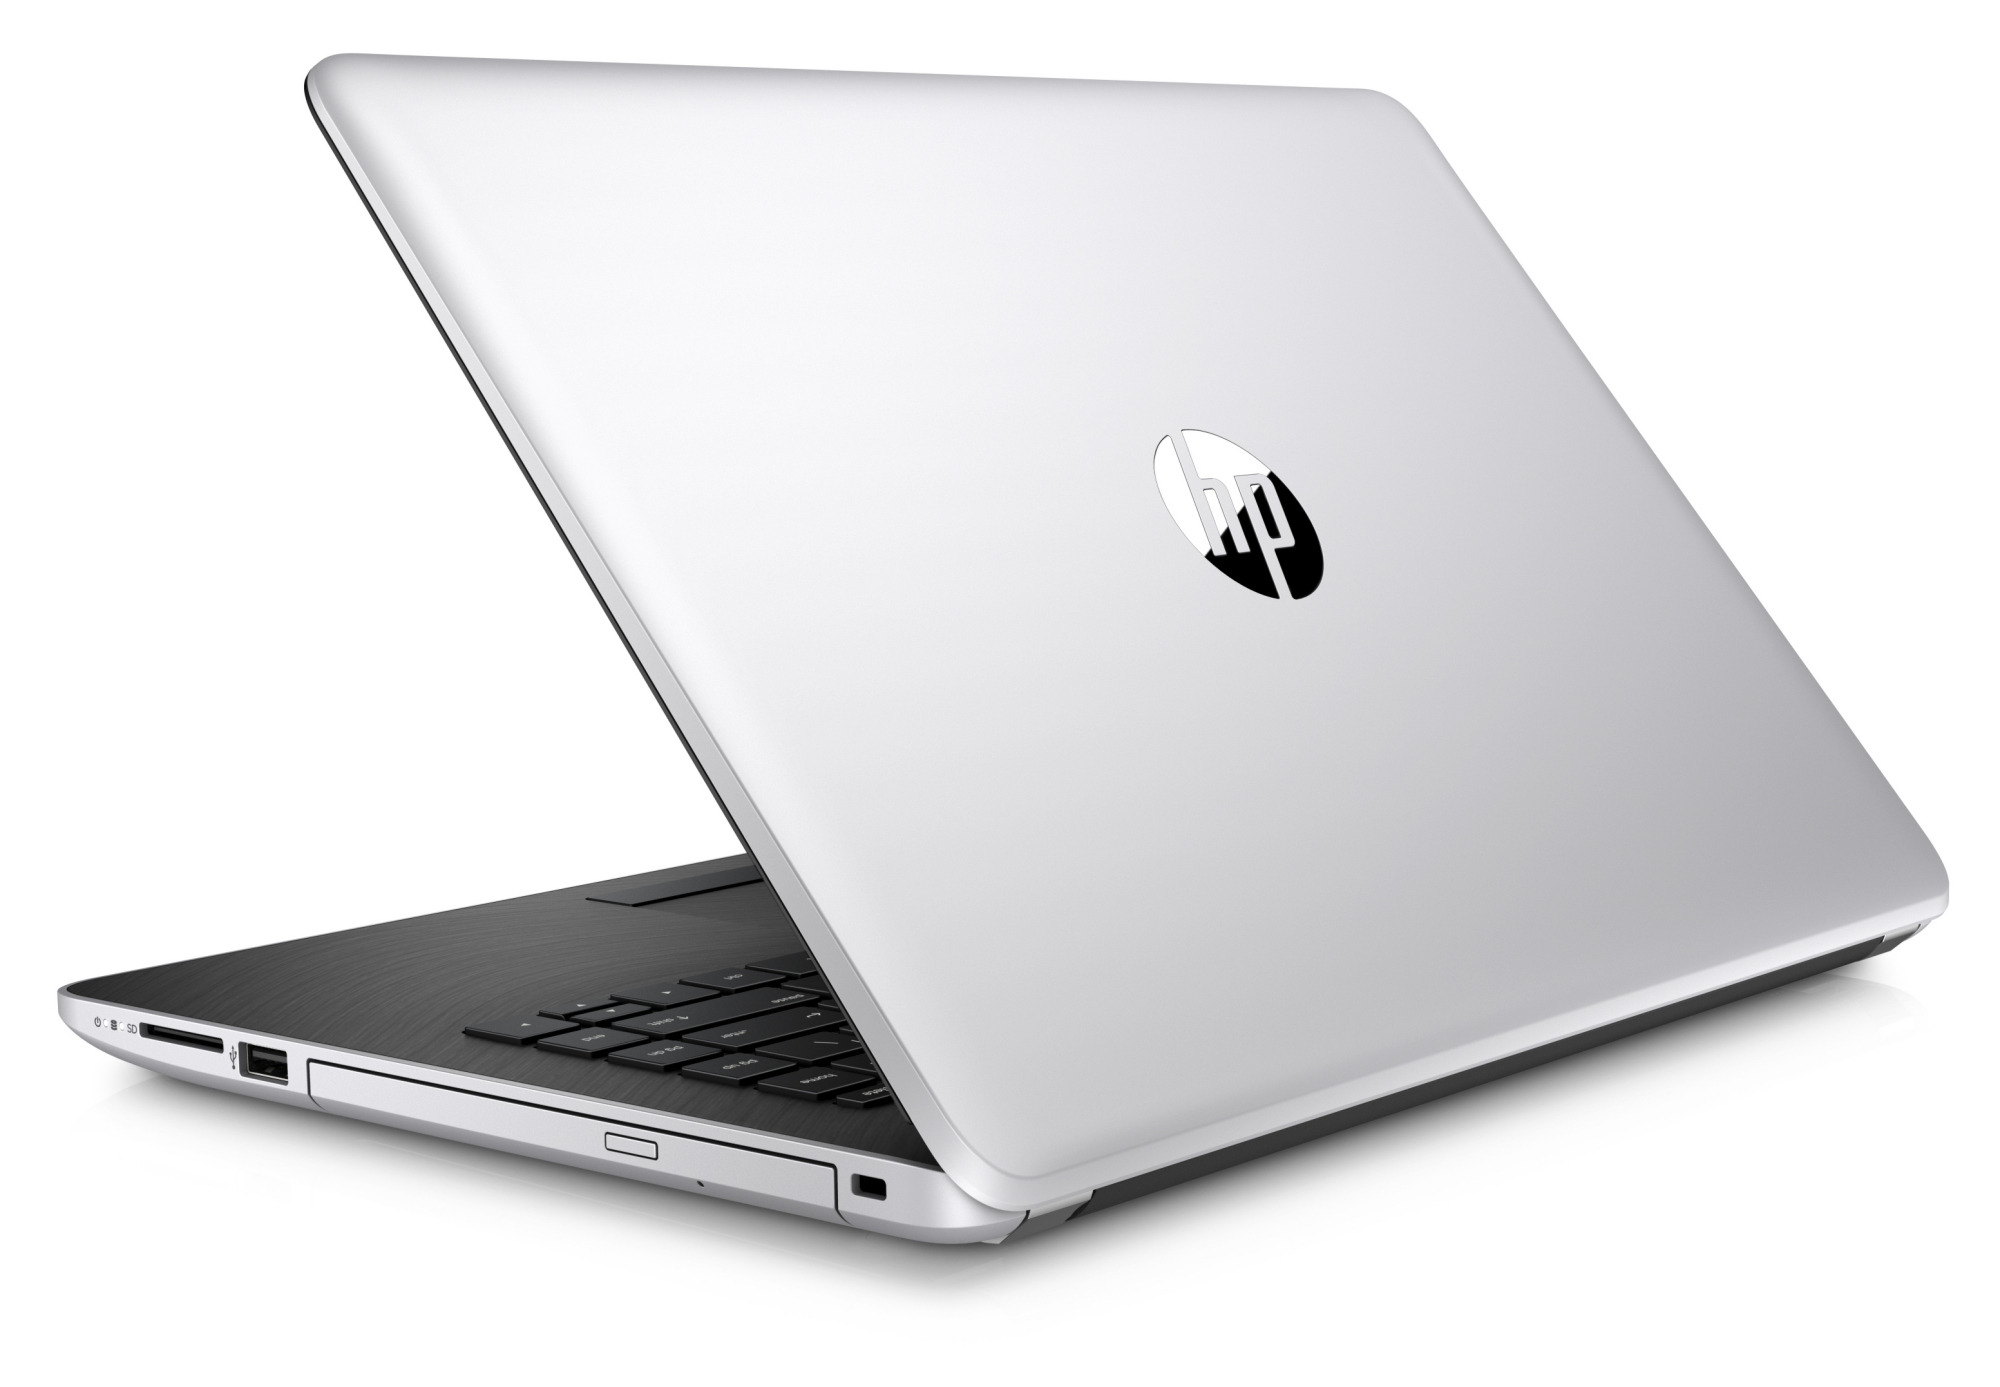  HP 14 bs007ng i5 7200U FHD Laptop Review 